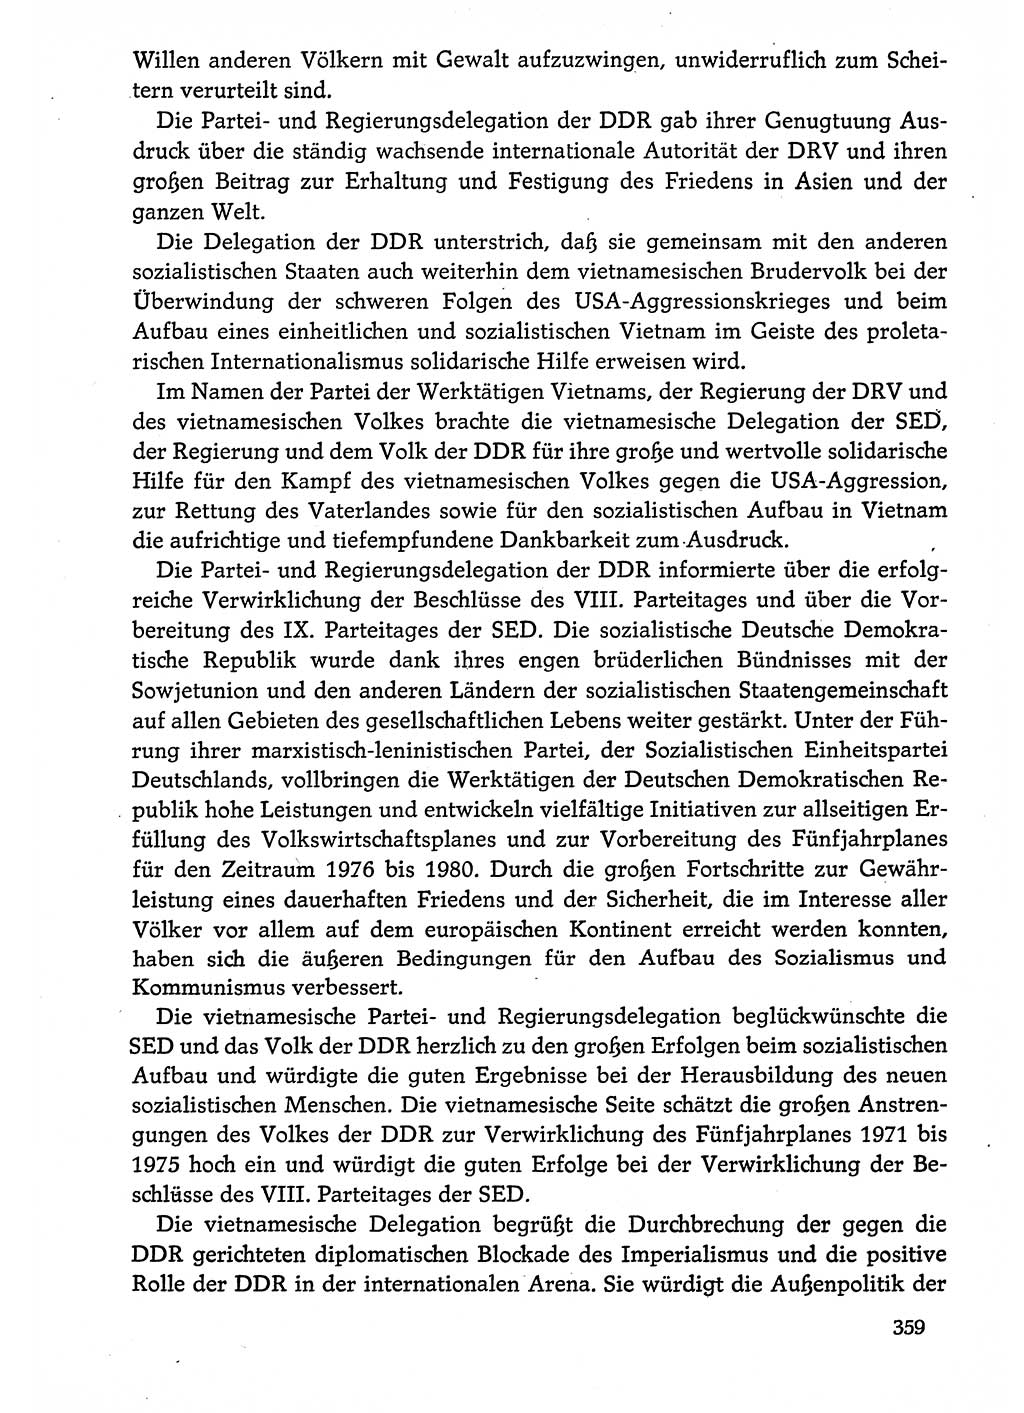 Dokumente der Sozialistischen Einheitspartei Deutschlands (SED) [Deutsche Demokratische Republik (DDR)] 1974-1975, Seite 359 (Dok. SED DDR 1978, Bd. ⅩⅤ, S. 359)